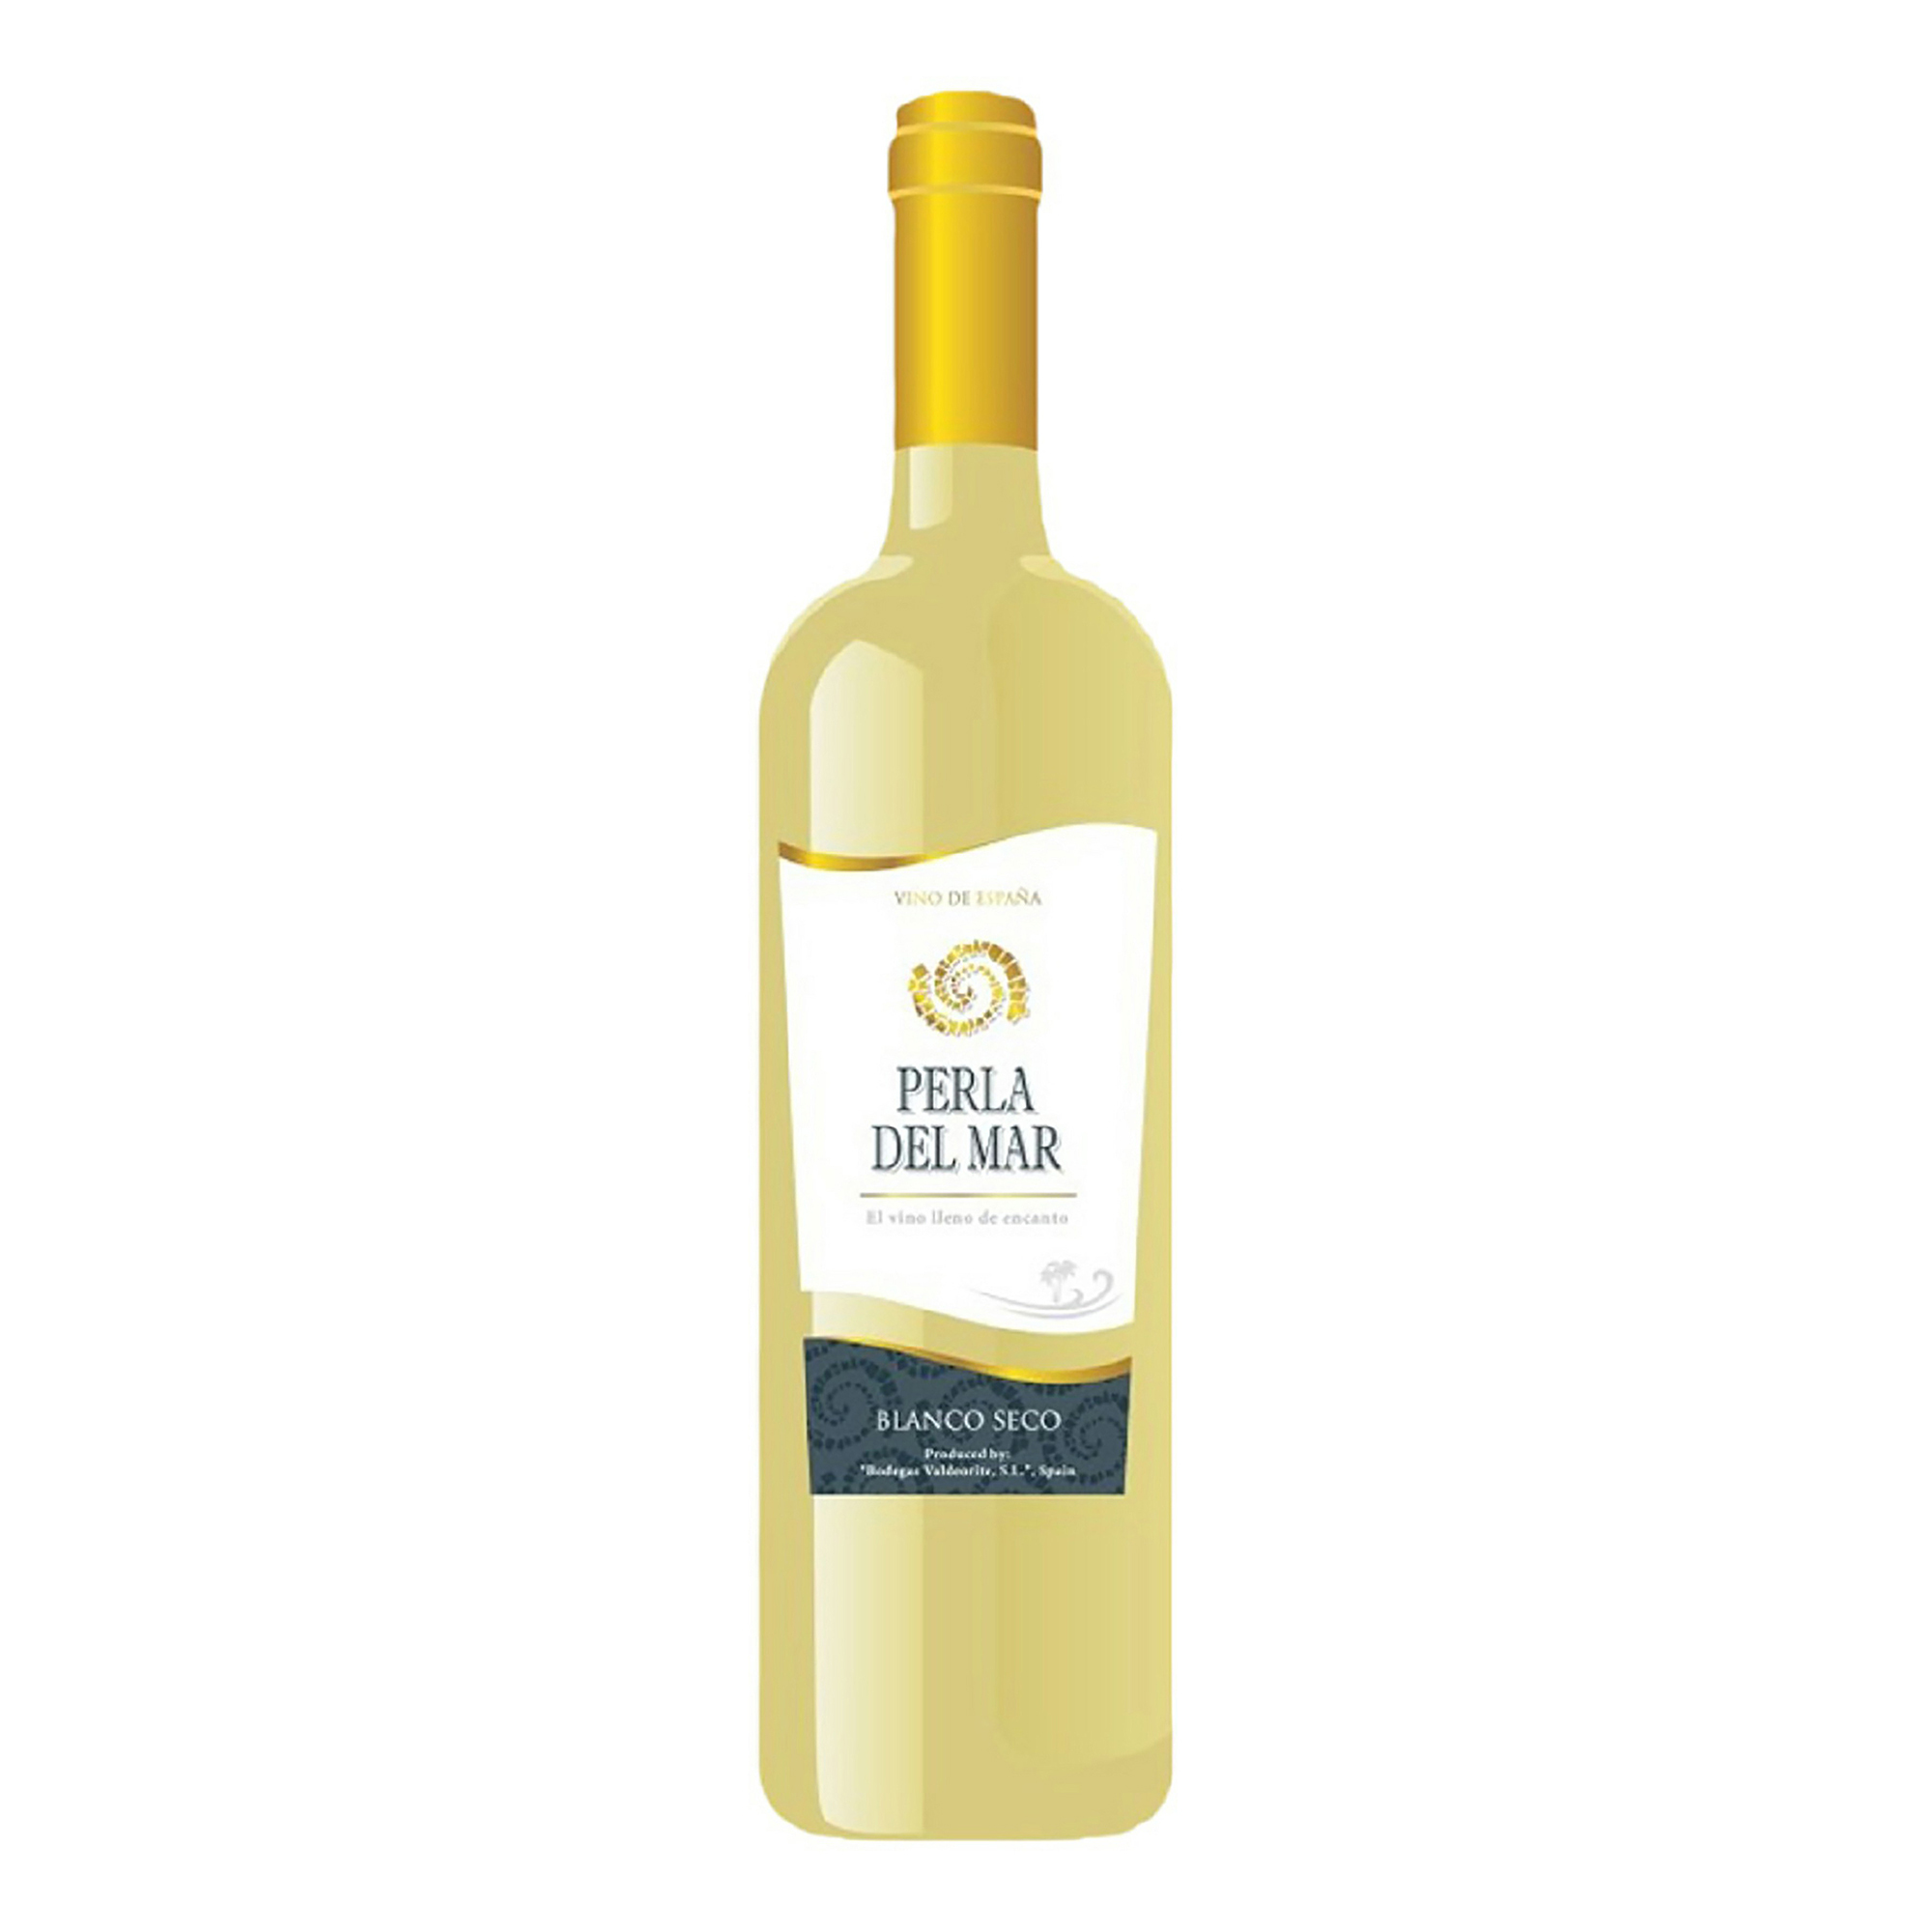 Сухое полусладкое вино. Белое вино Перла дель мар. Вино Lacrima purpura, 0,75 л. Perla del Mar вино. Перла дель мар вино белое полусладкое.